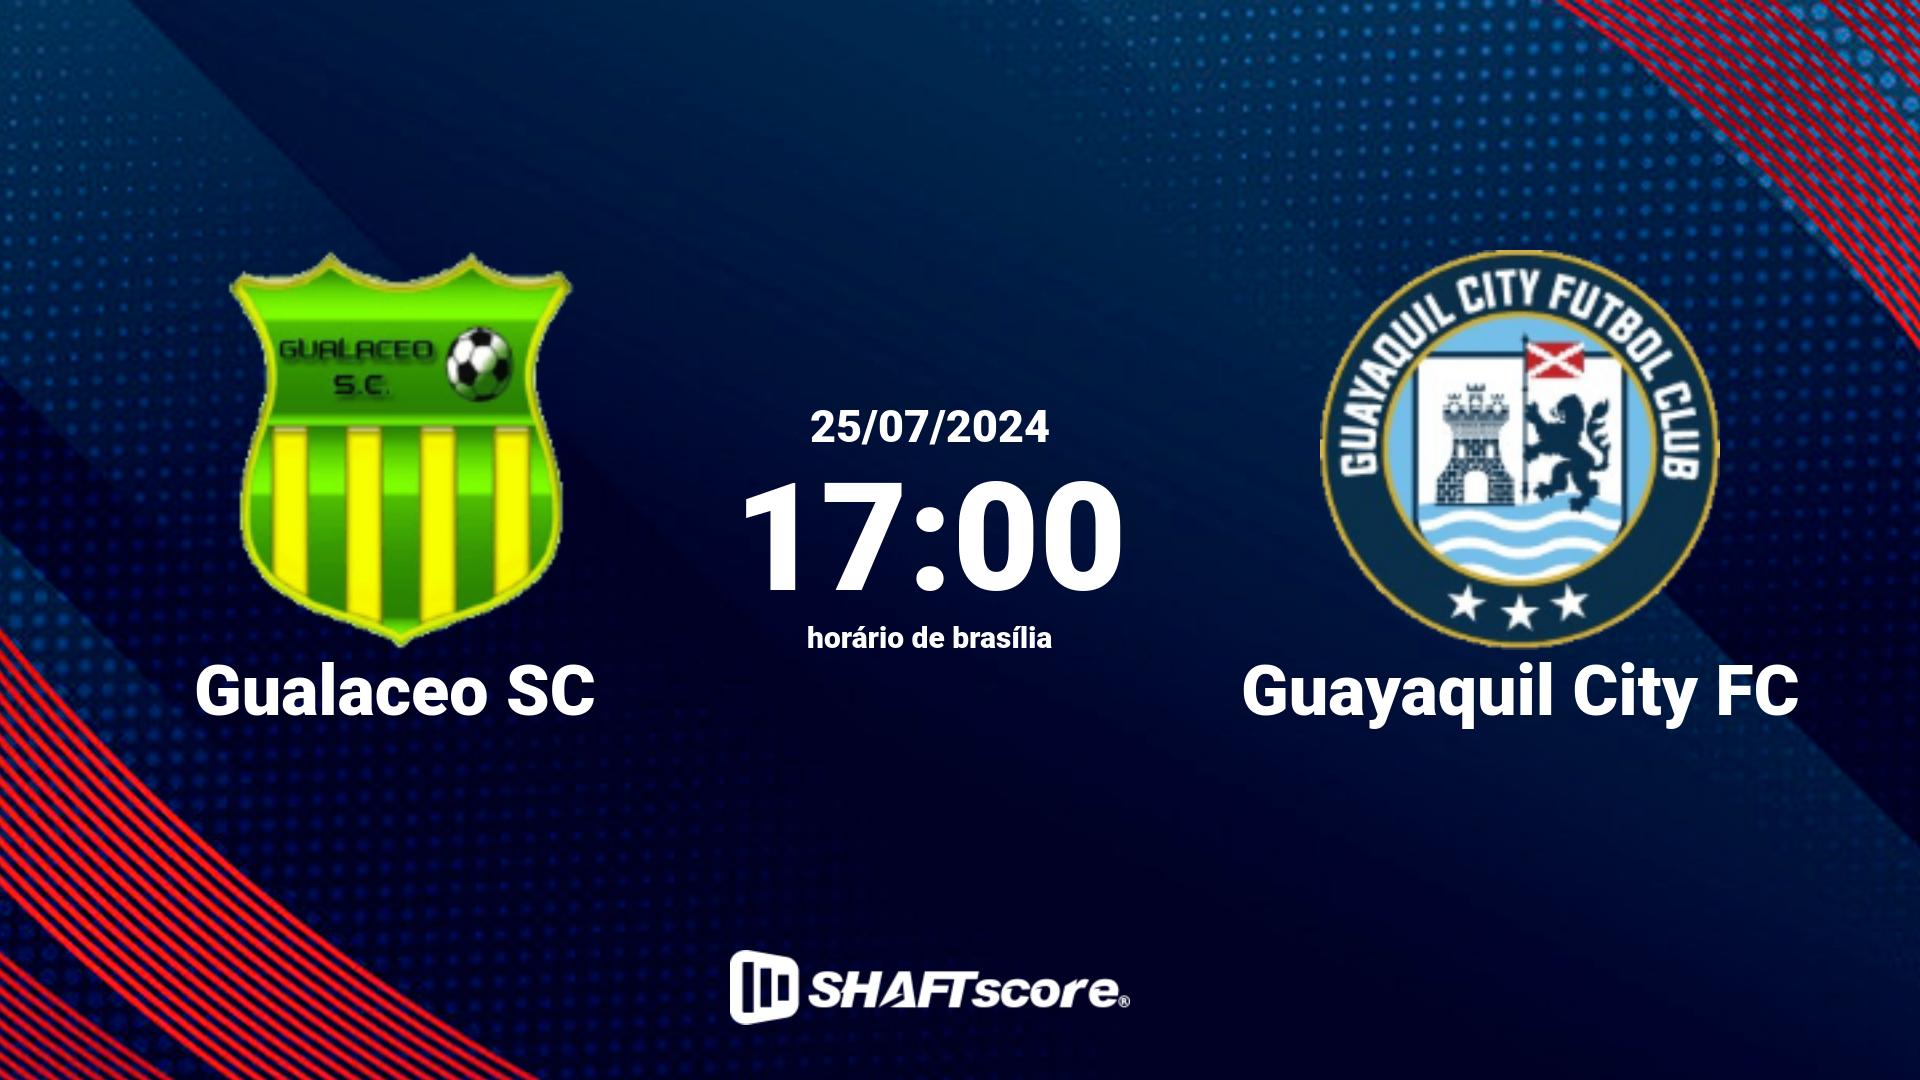 Estatísticas do jogo Gualaceo SC vs Guayaquil City FC 25.07 17:00